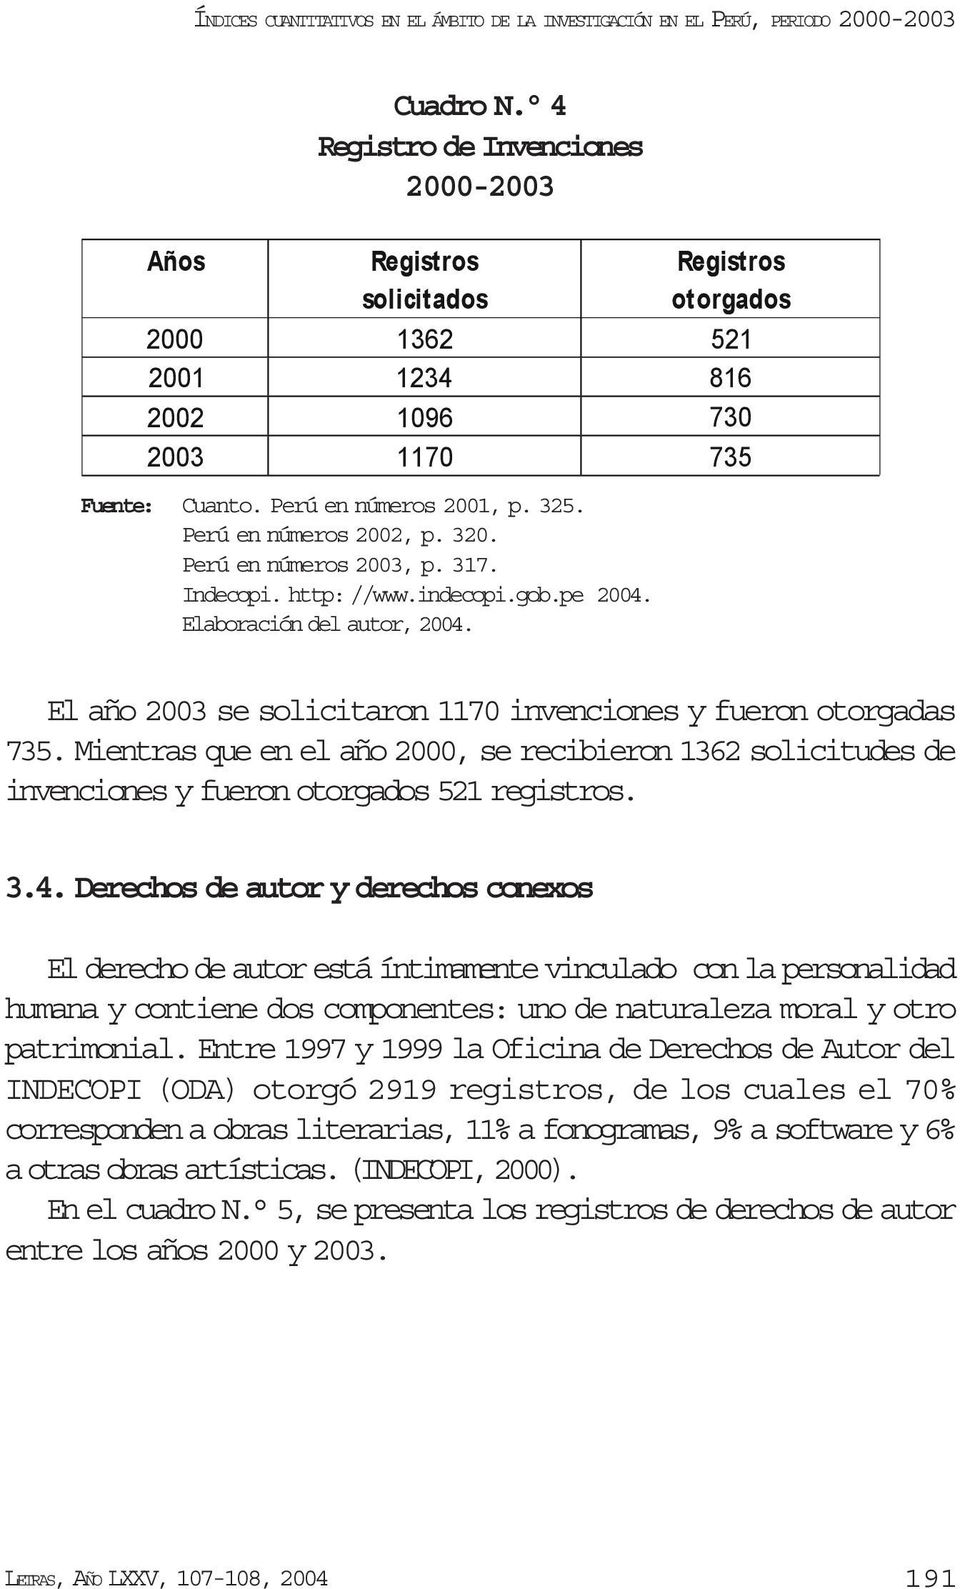 Perú en números 2003, p. 317. Indecopi. http: //www.indecopi.gob.pe 2004. Elaboración del autor, 2004. El año 2003 se solicitaron 1170 invenciones y fueron otorgadas 735.